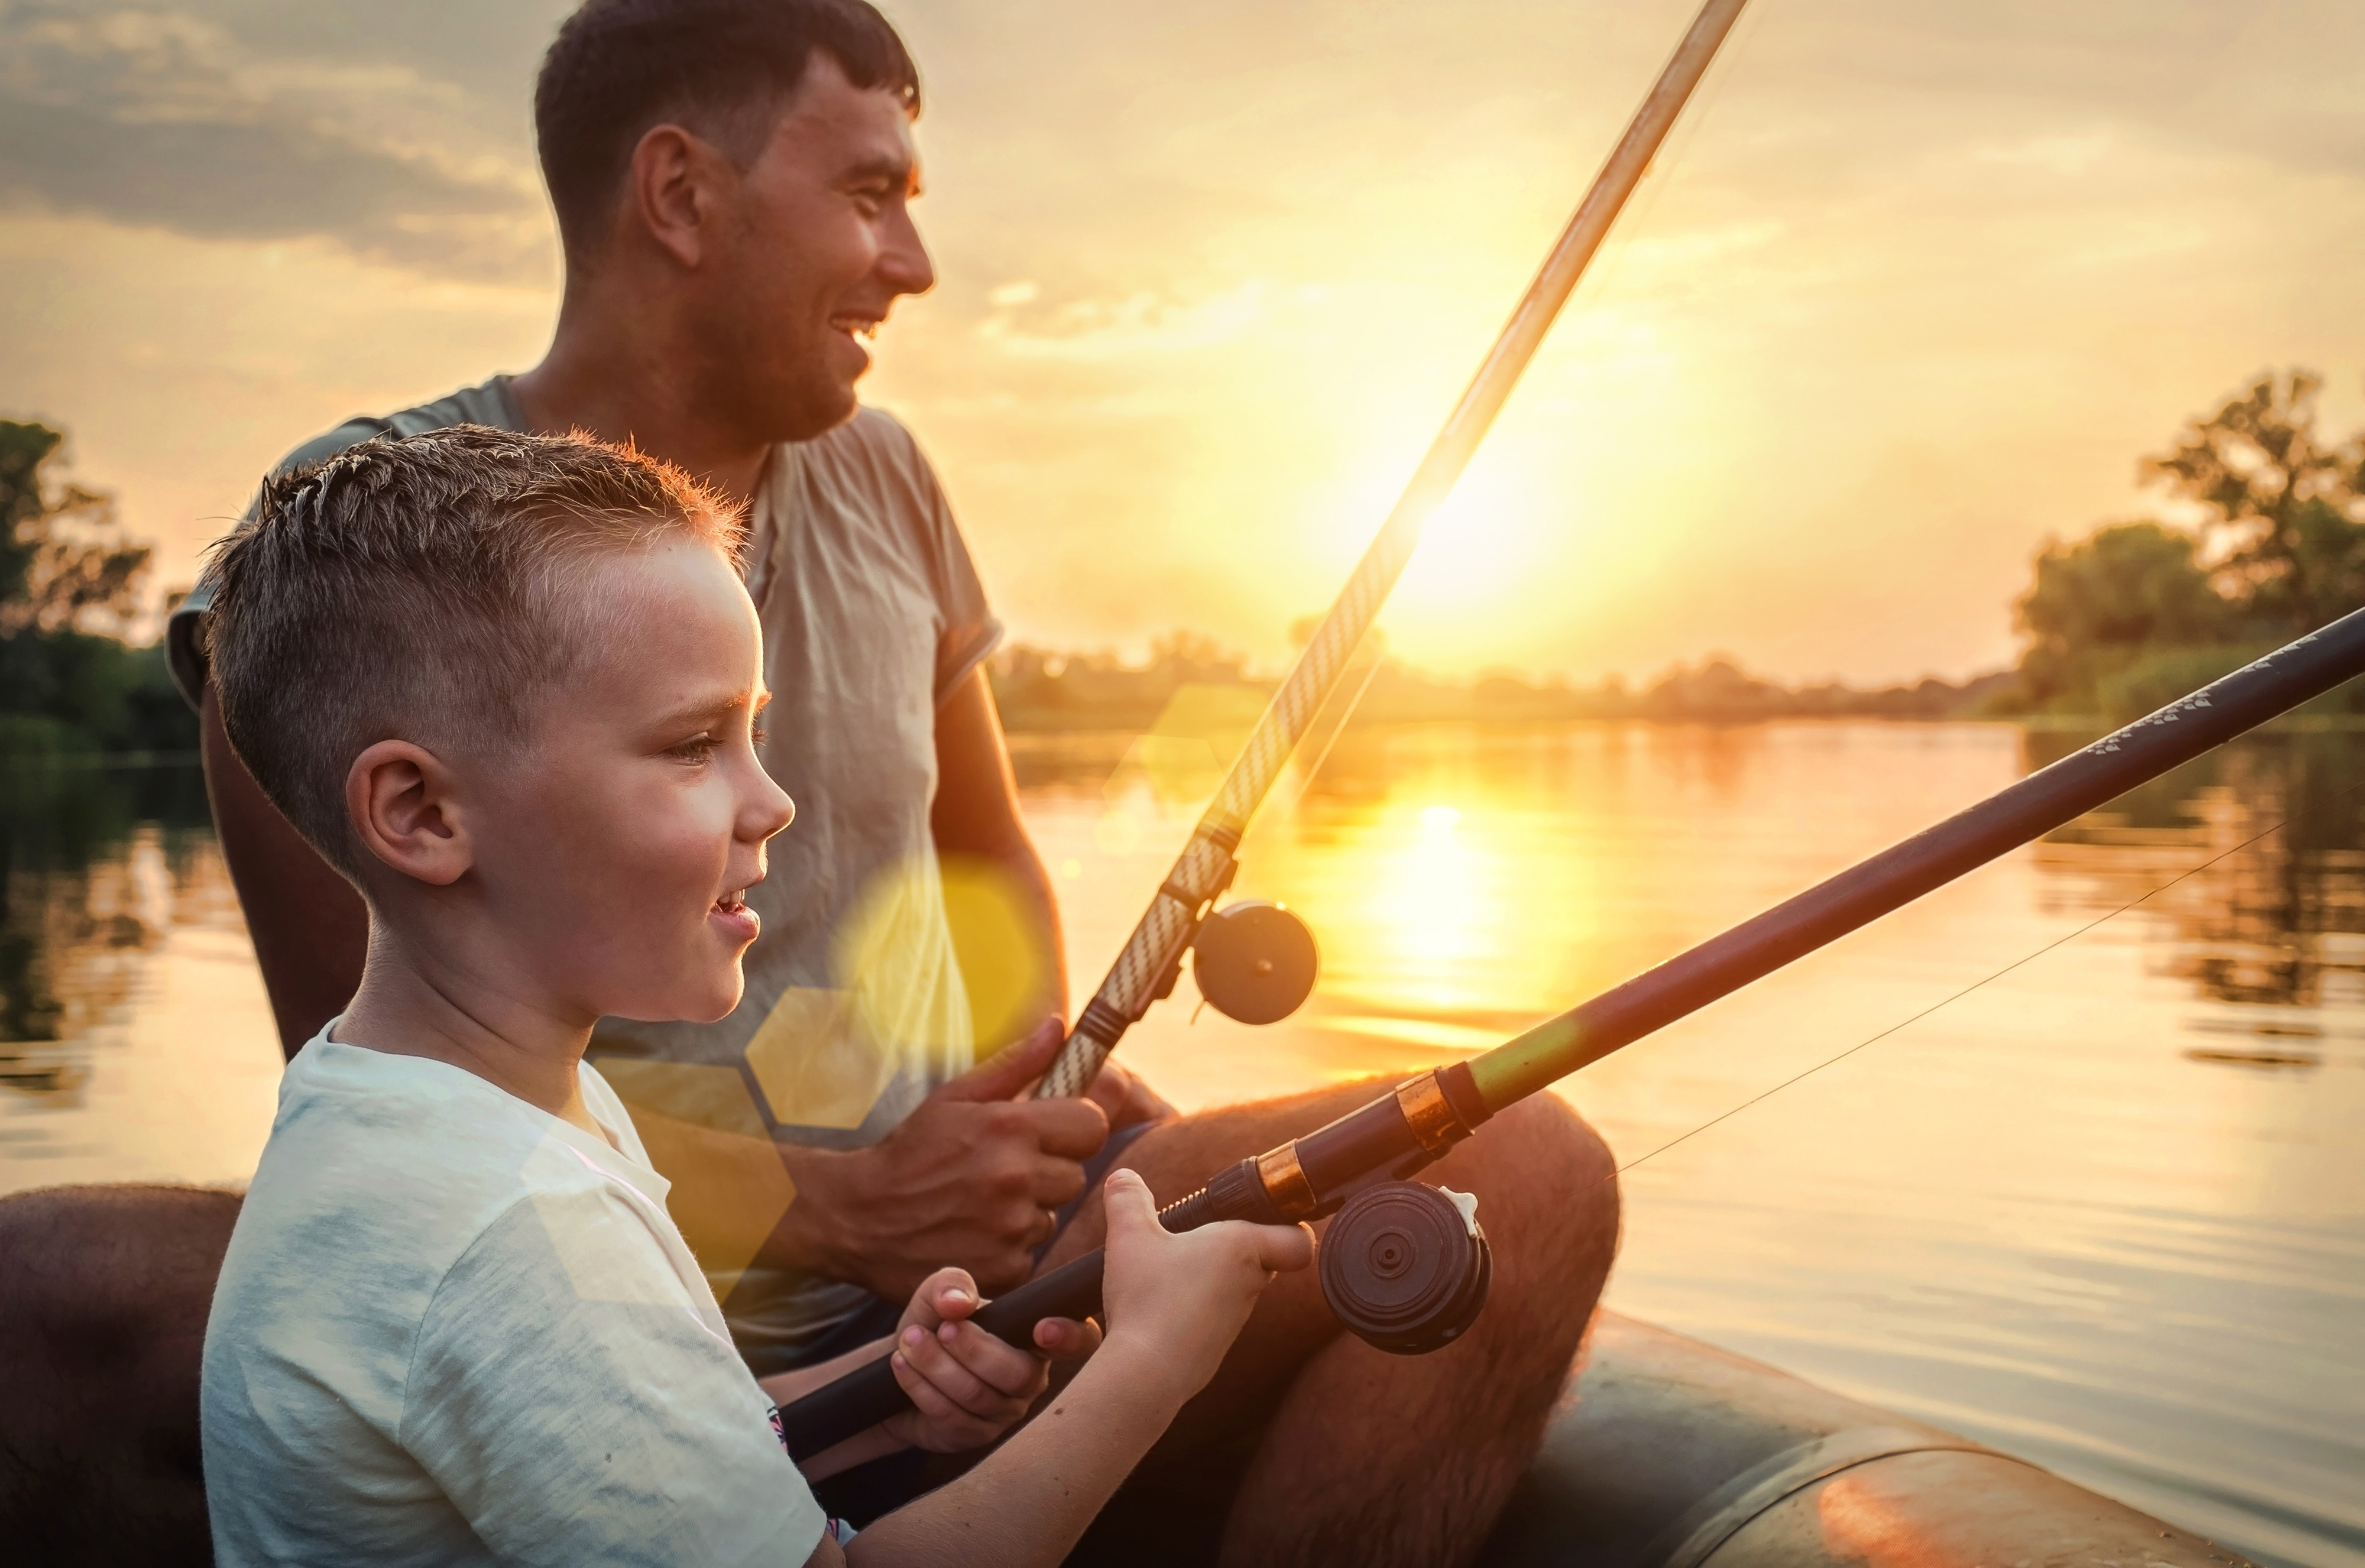 Père et fils pêchant ensemble depuis un canot pendant le coucher du soleil | Source : Shutterstock